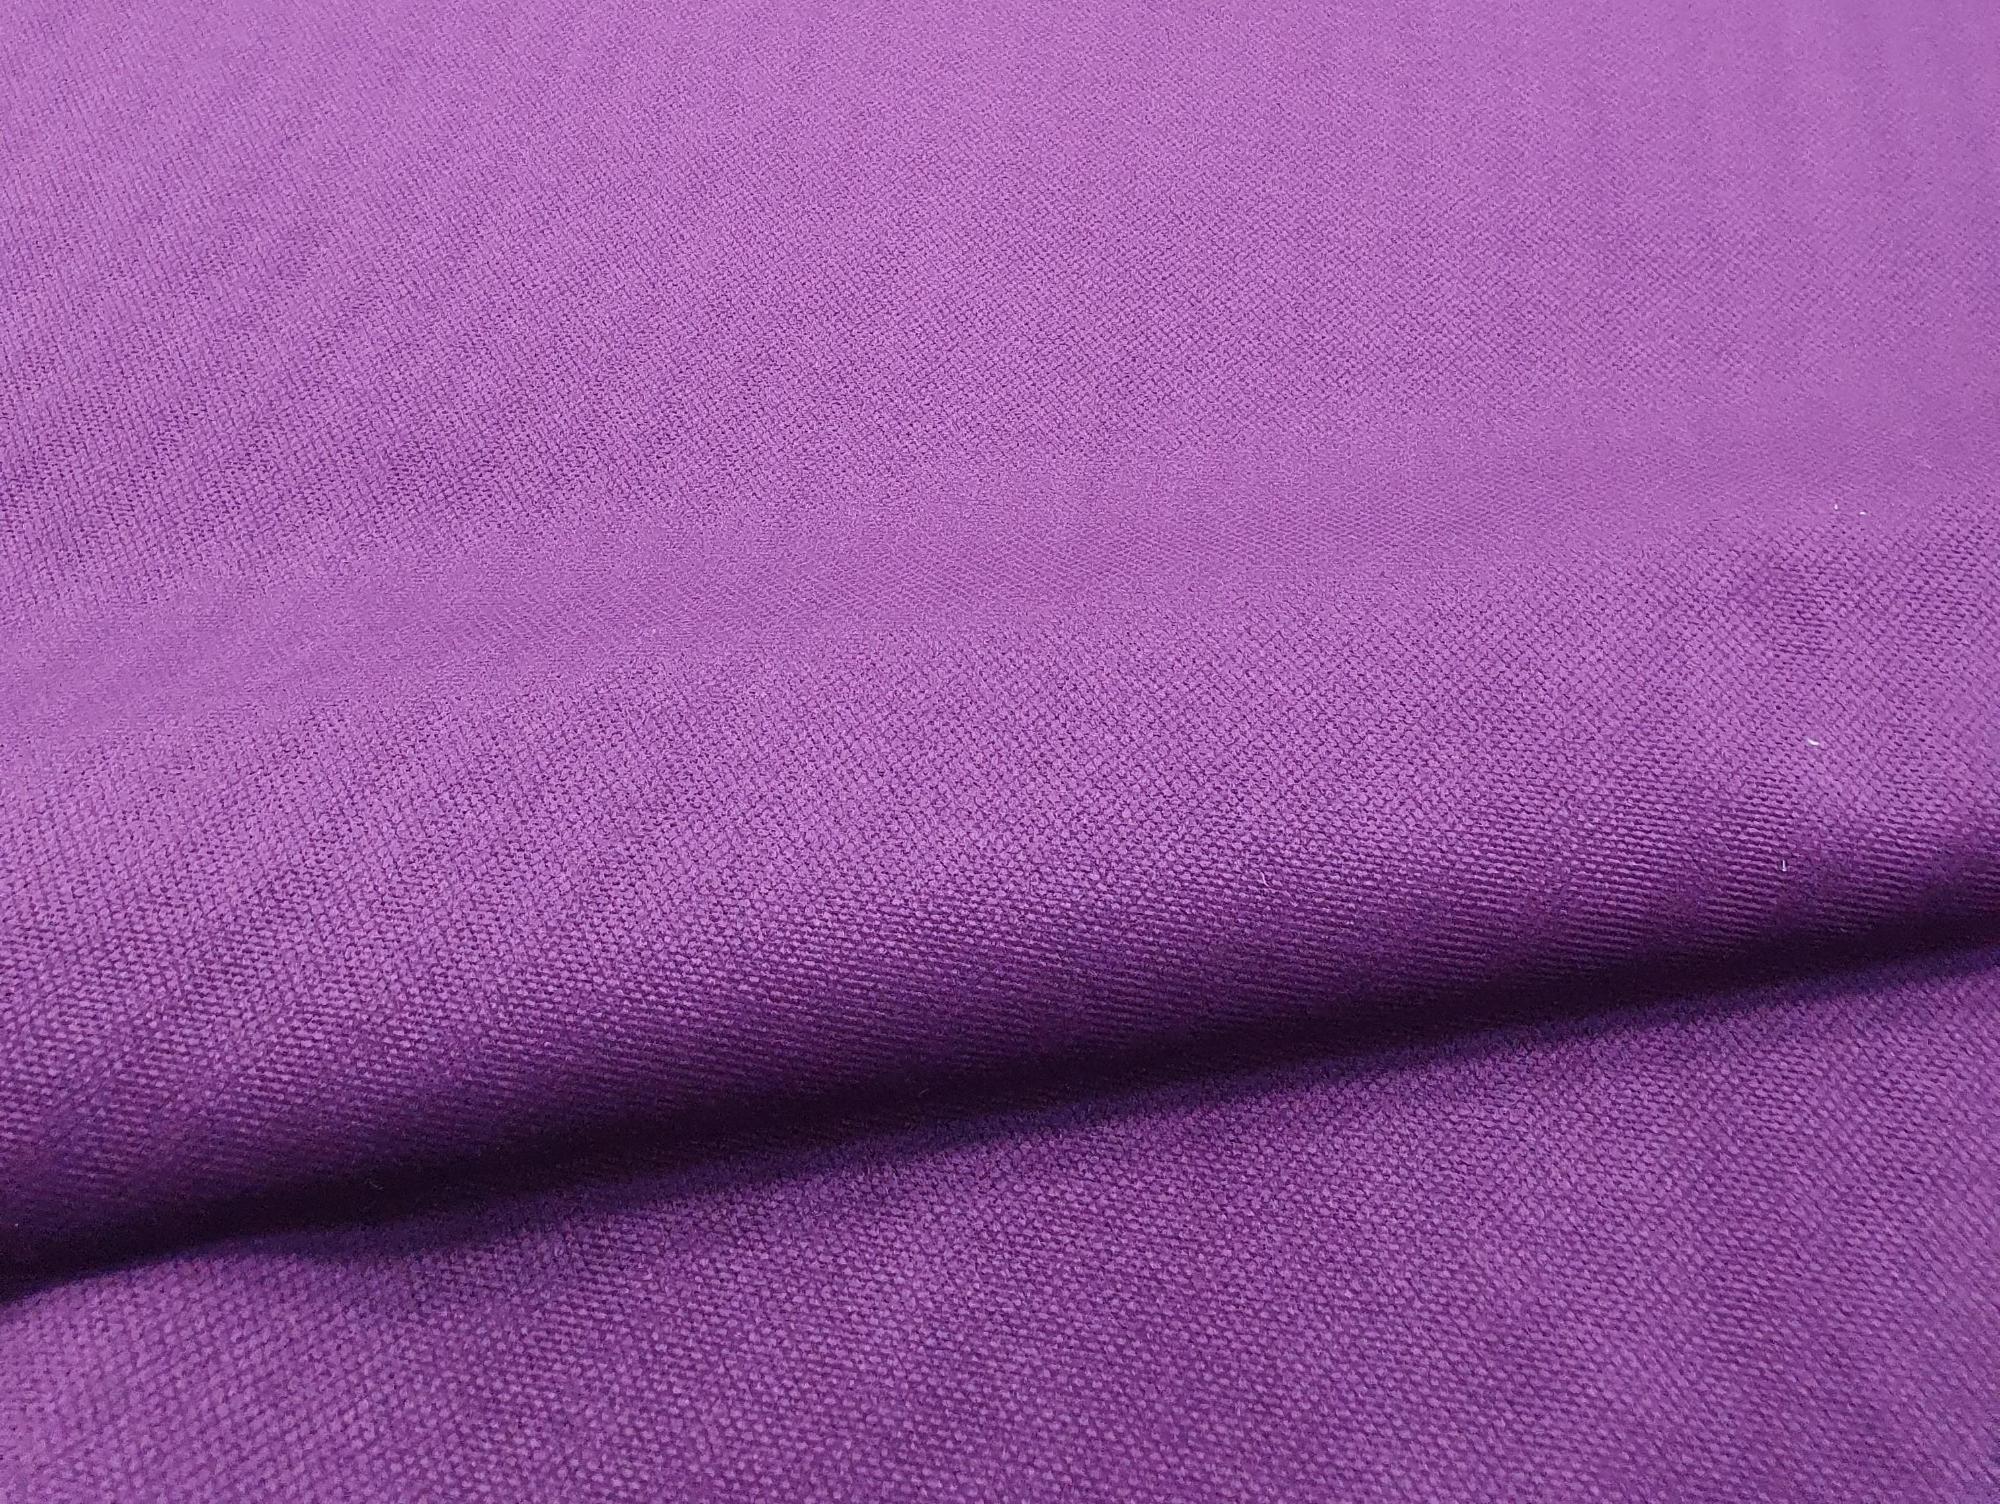 Интерьерная кровать Ларго (Фиолетовый)